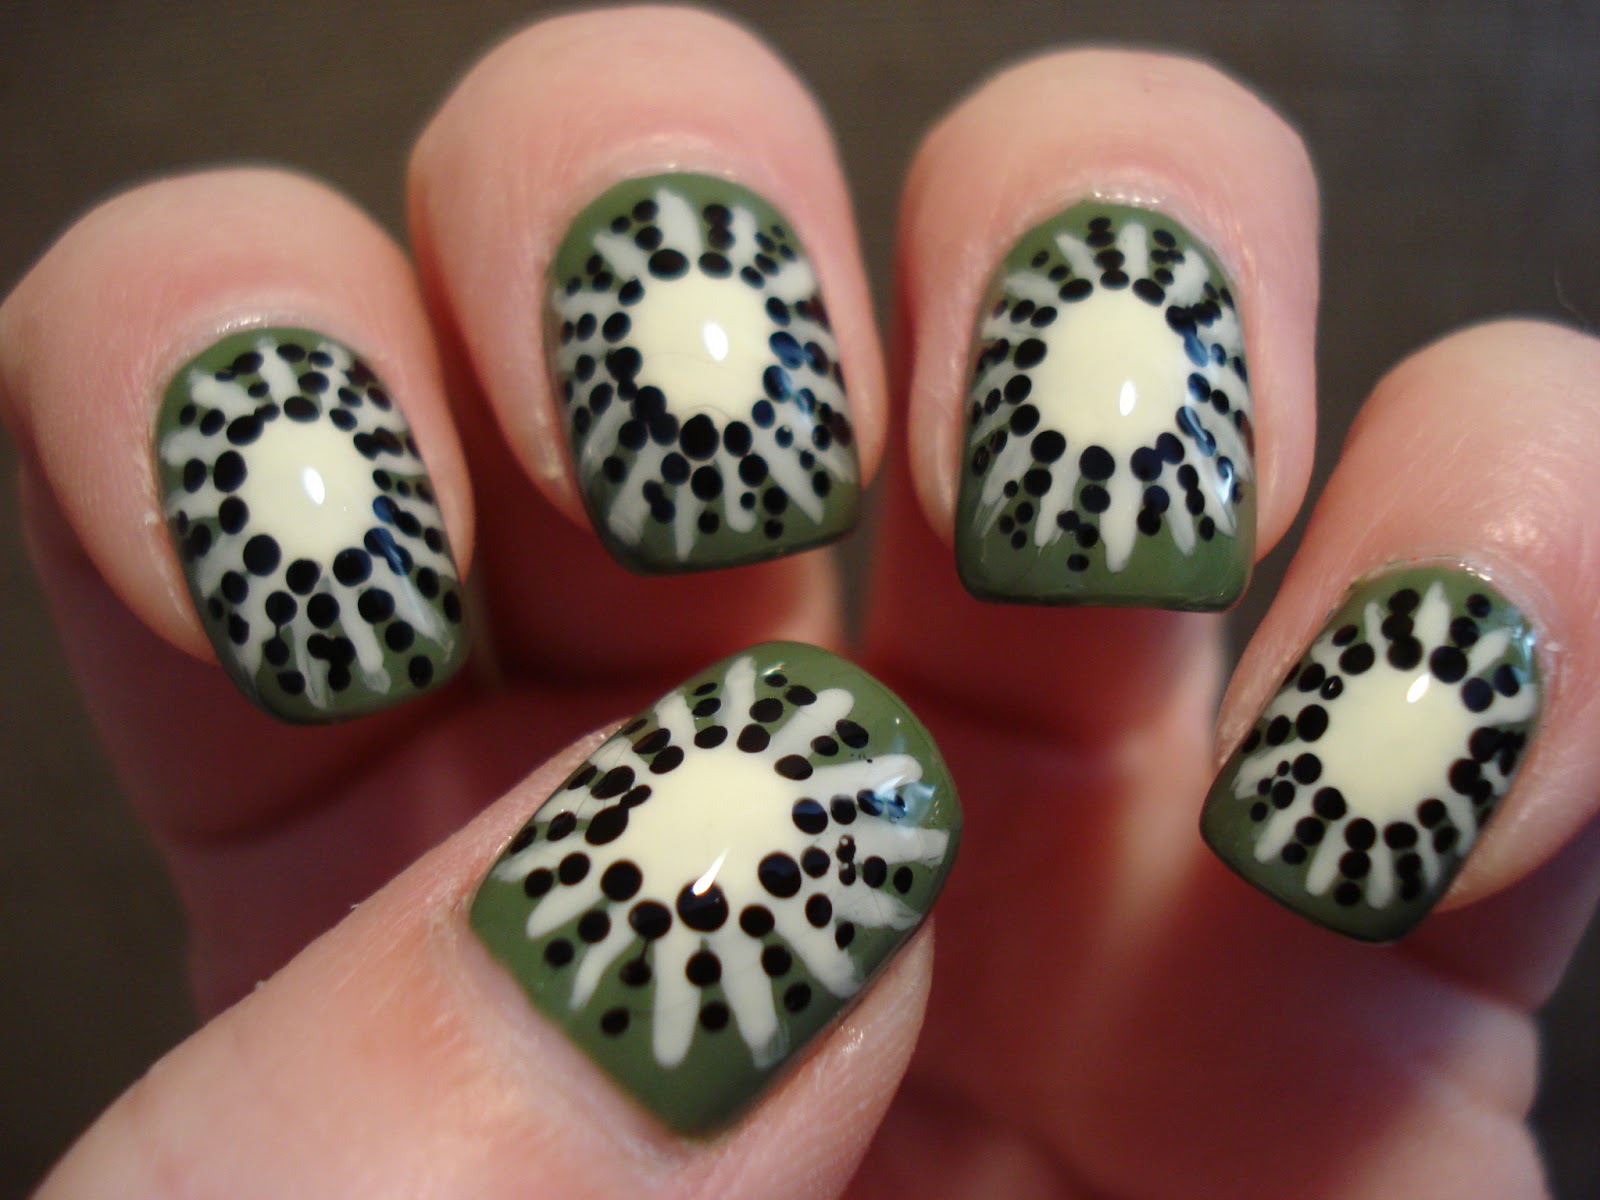 5. Kiwi Pattern Nail Design - wide 4